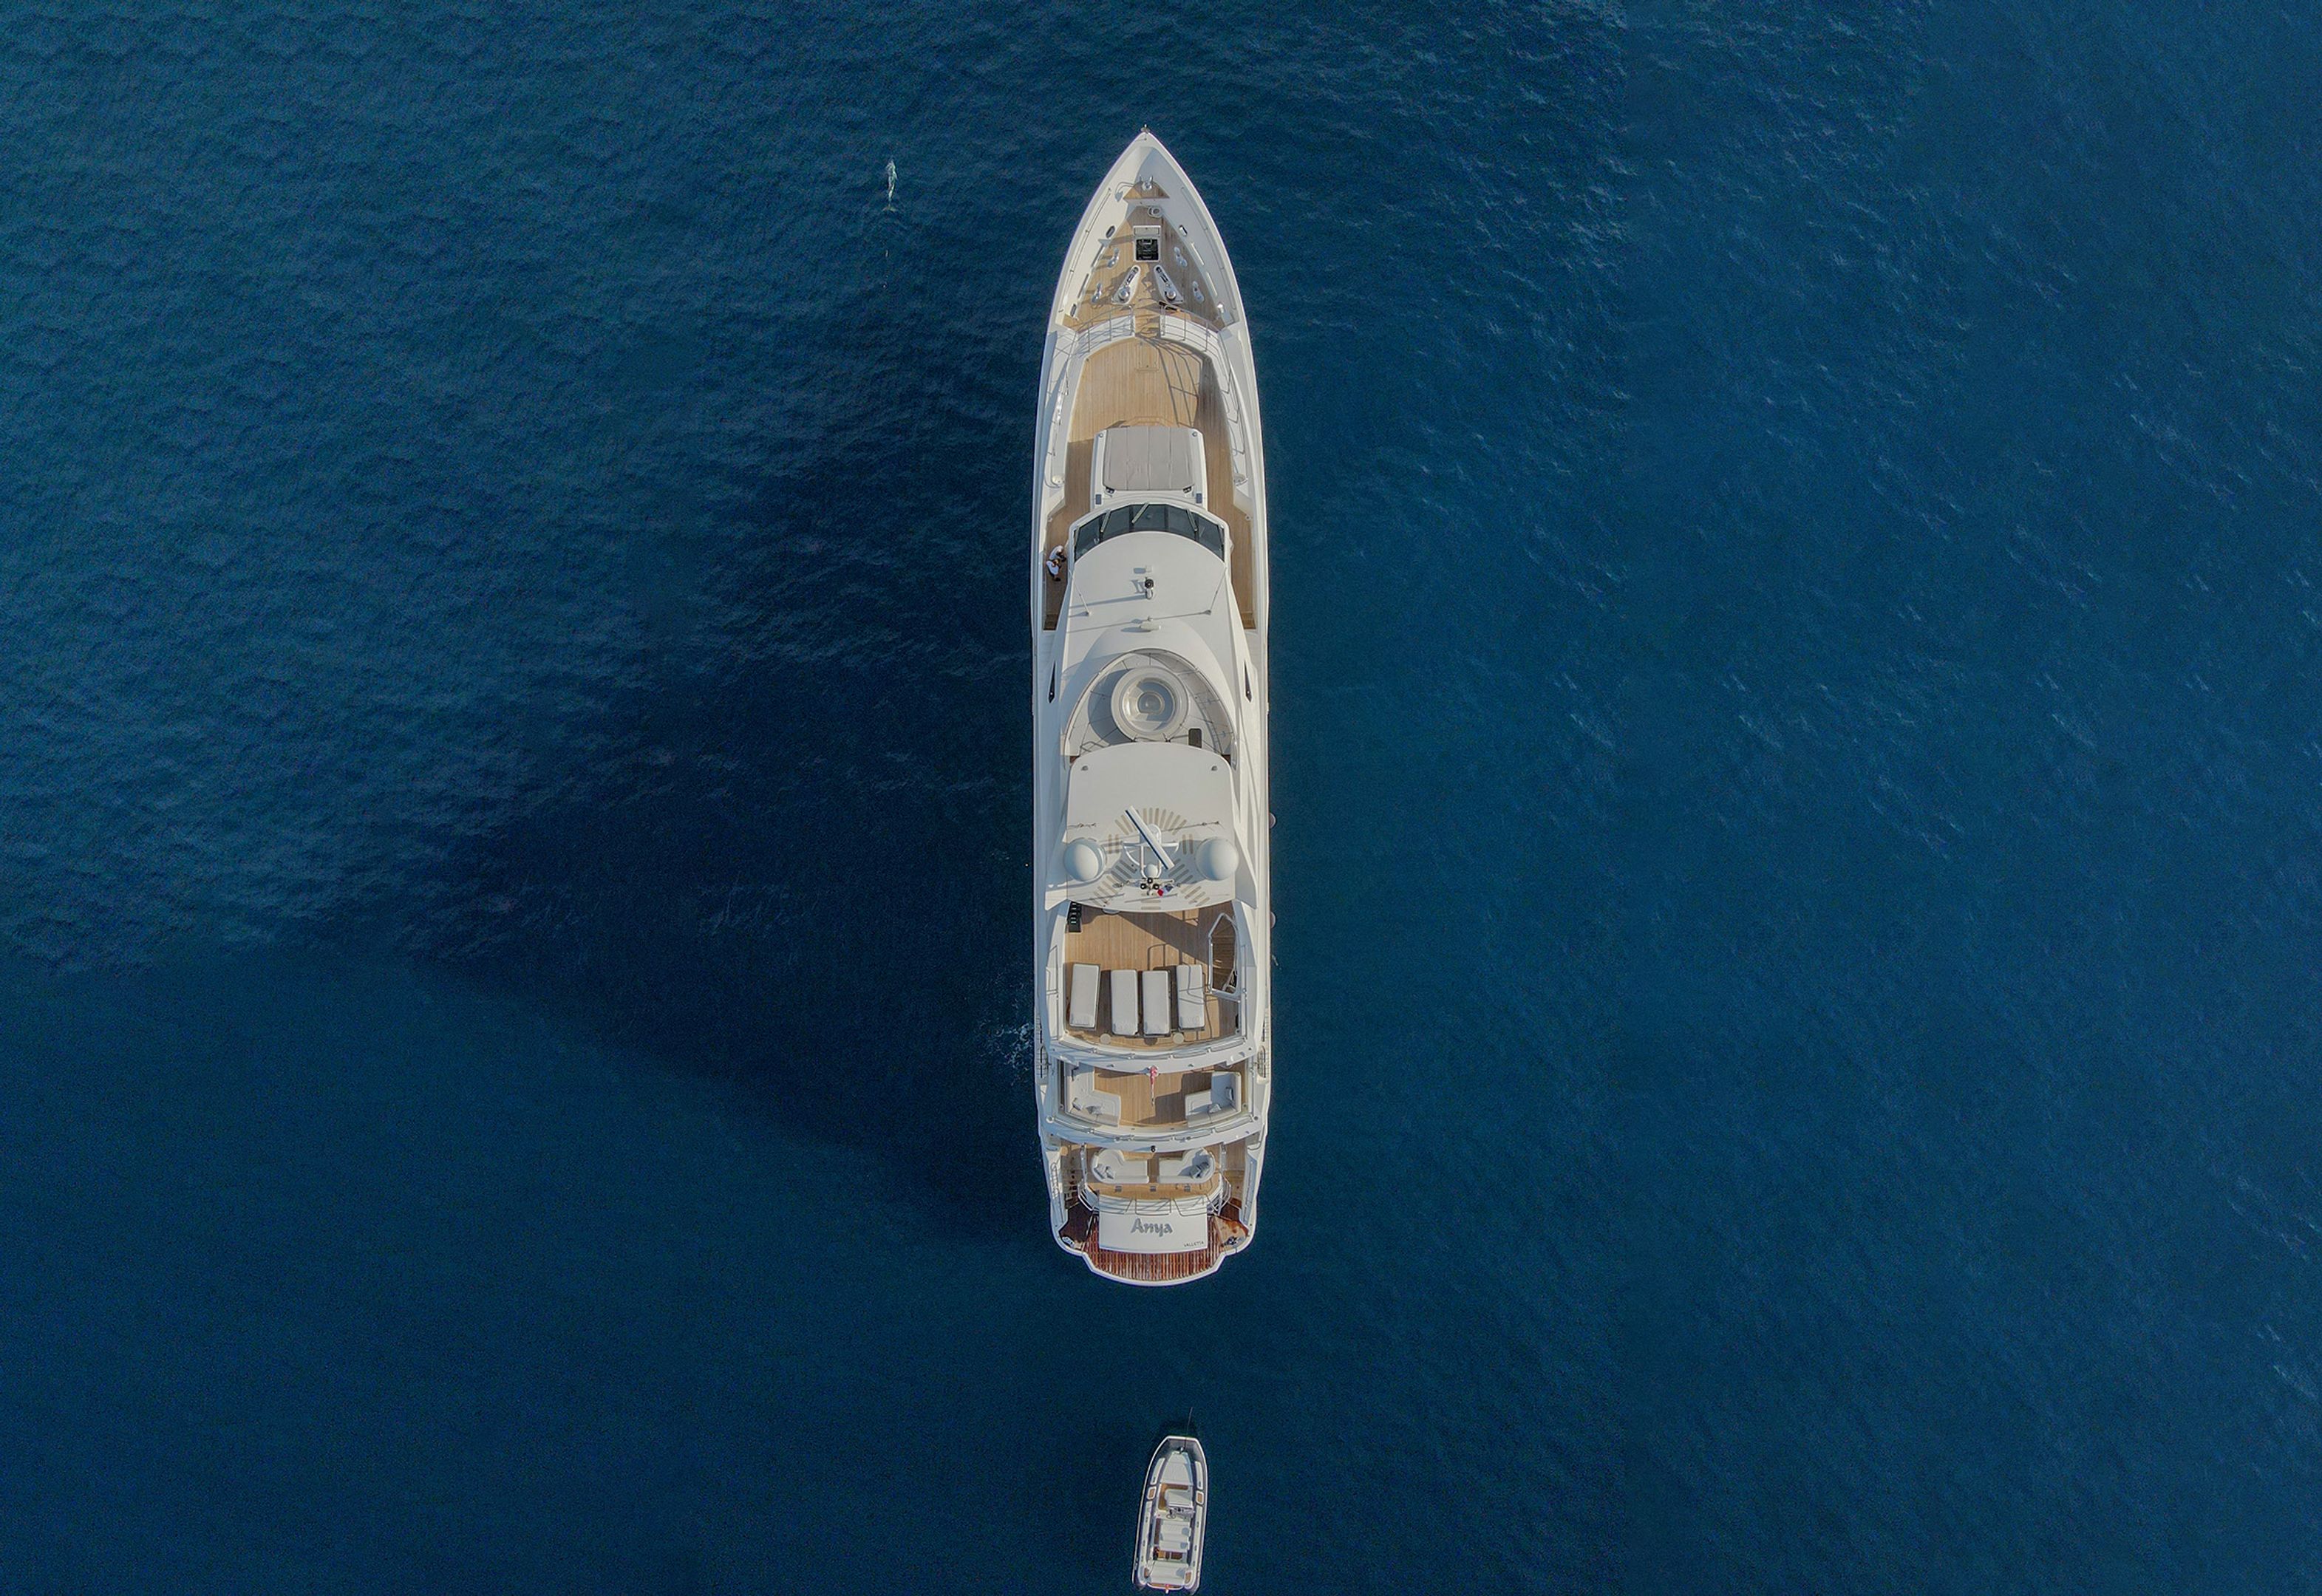 Sunseeker 40 Metre Yacht